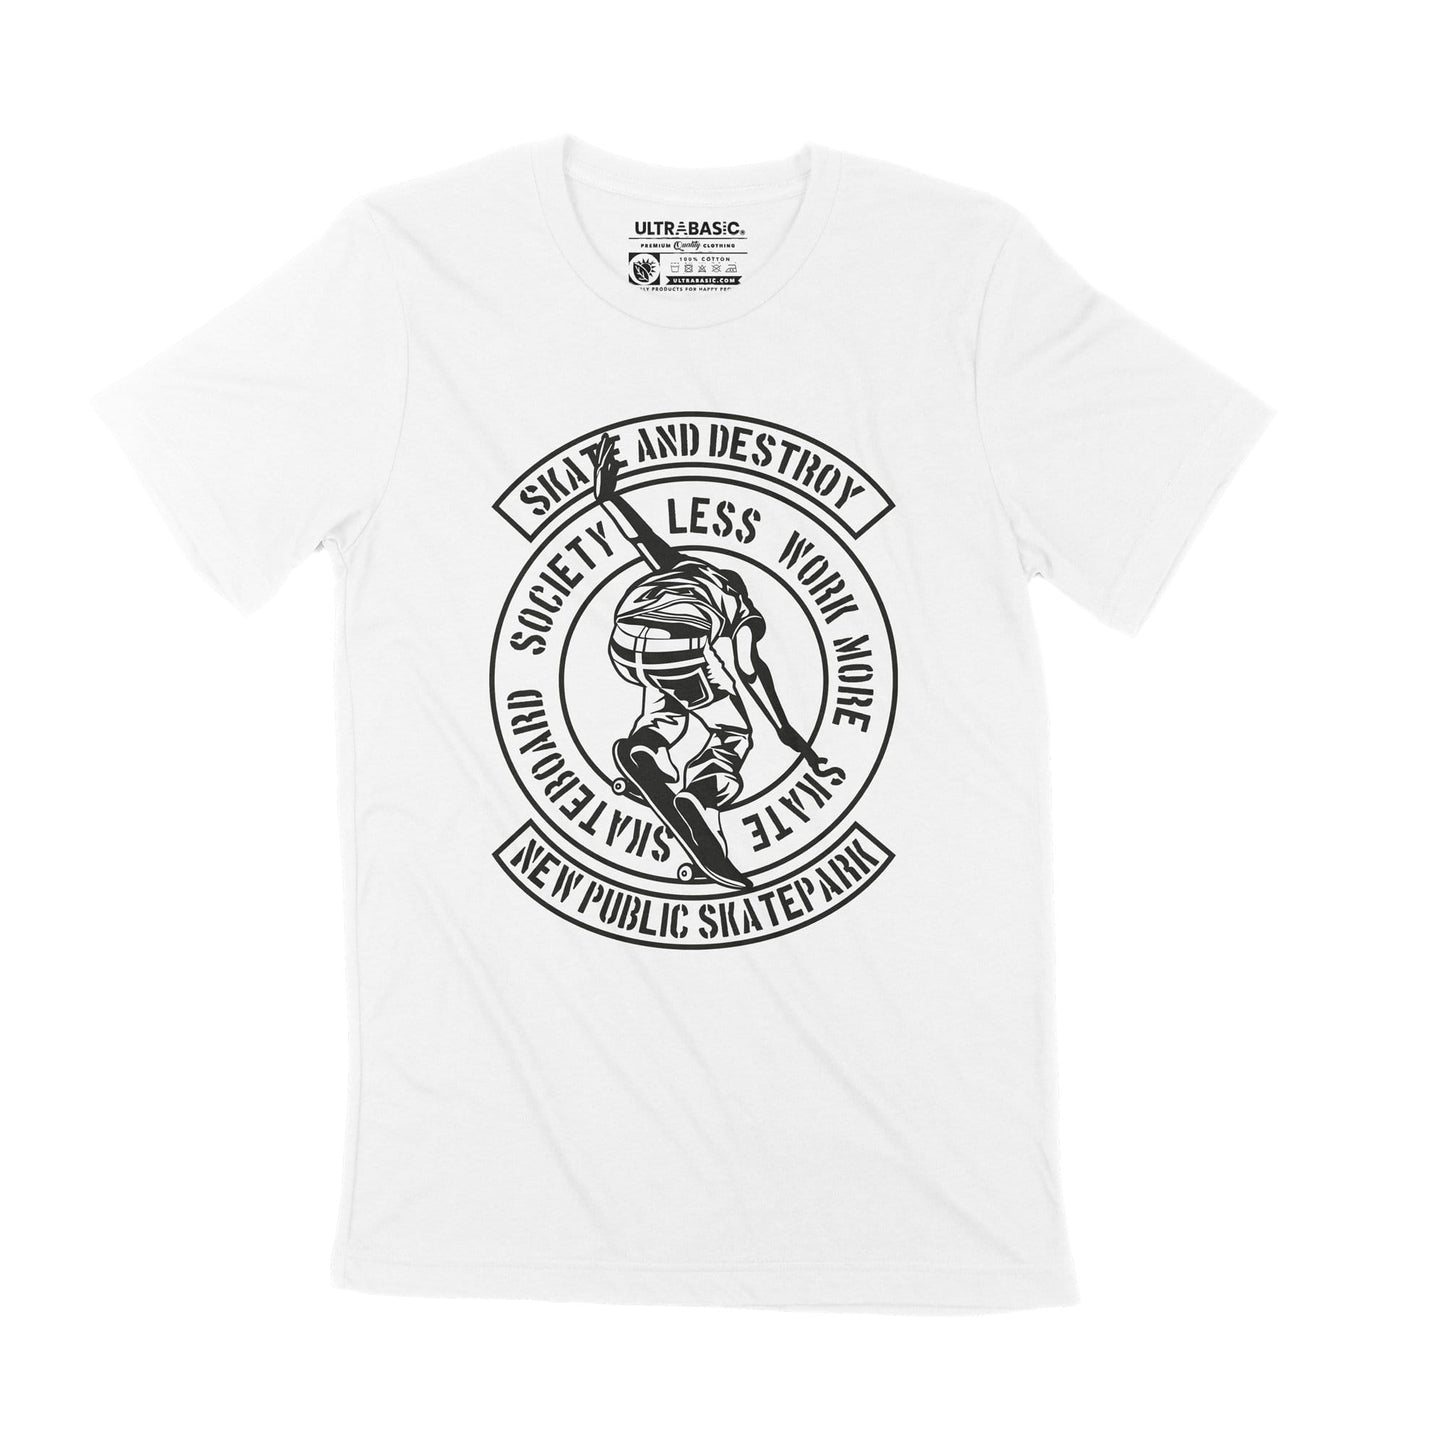 ULTRABASIC Men's Graphic T-Shirt Skate and Destroy - Skateboard Tee Shirt